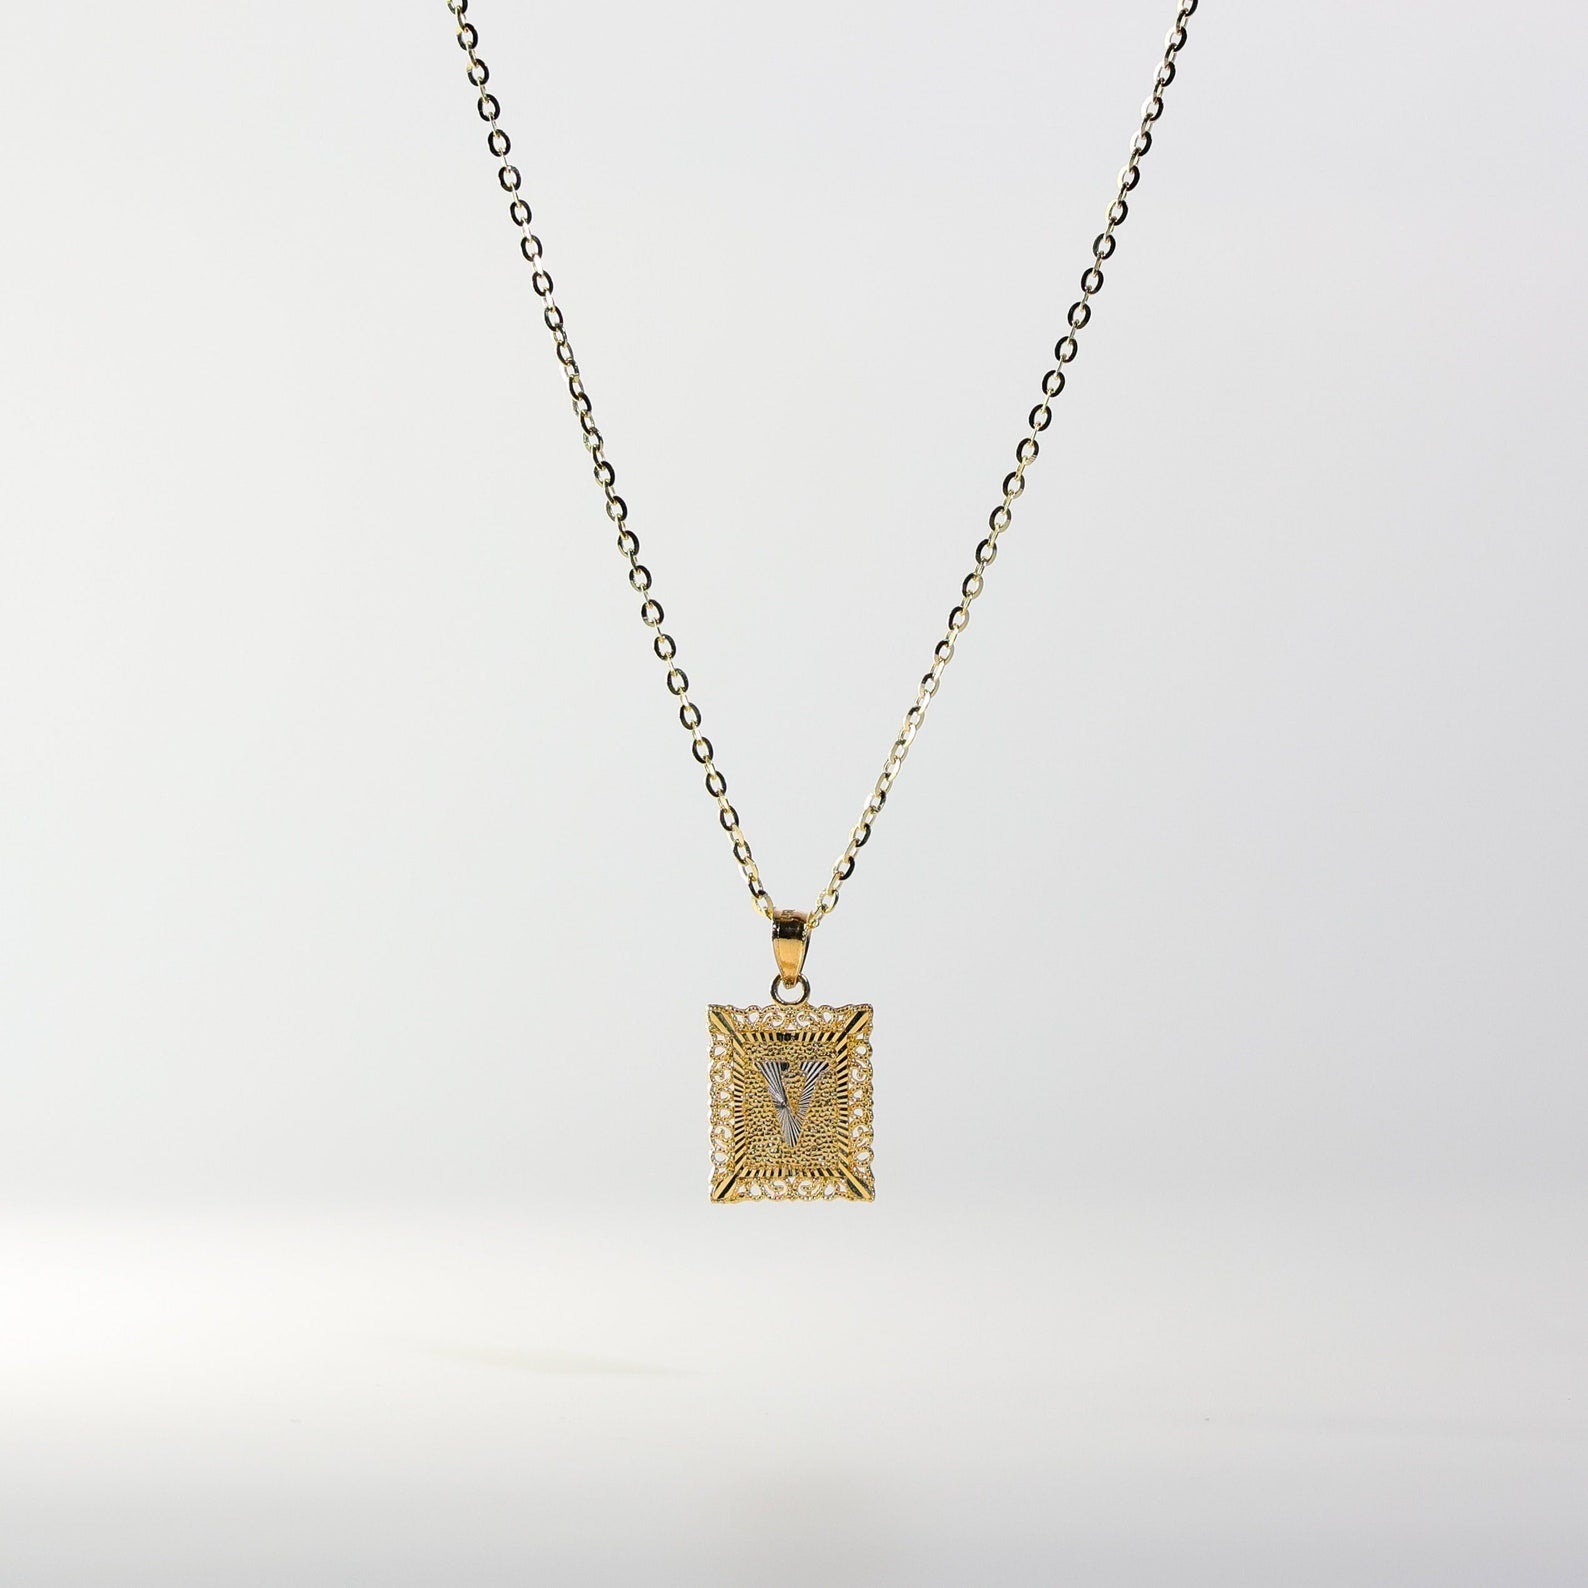 Gold Letter V Pendants | A-Z Gold Pendants - Charlie & Co. Jewelry